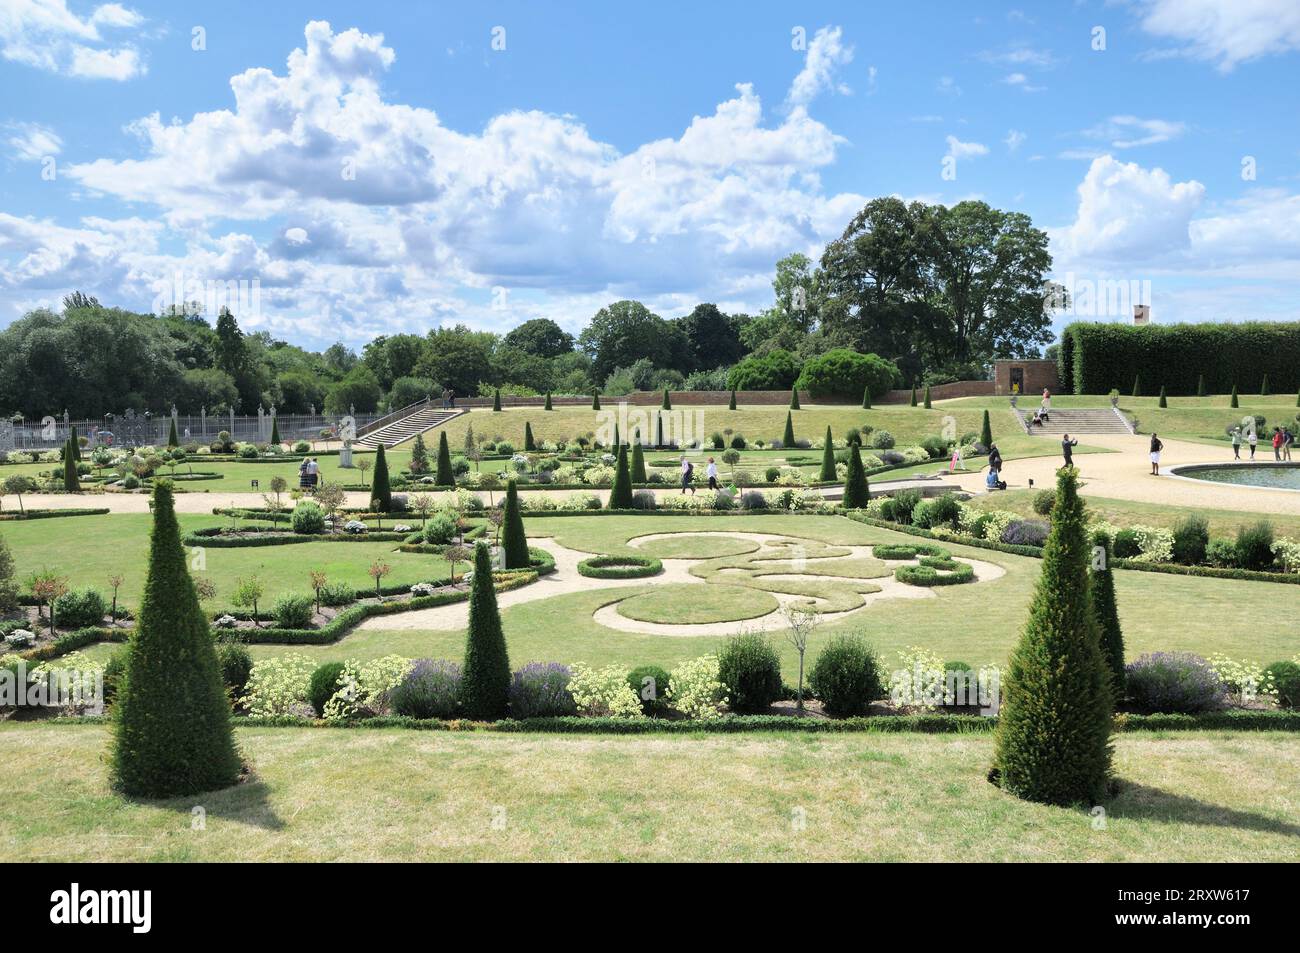 Il Privy Garden all'Hampton Court Palace con parterres su sentiero di ghiaia, scultura in erba gazon coupé e topiario ritagliato. Giardini in stile barocco inglese. Foto Stock